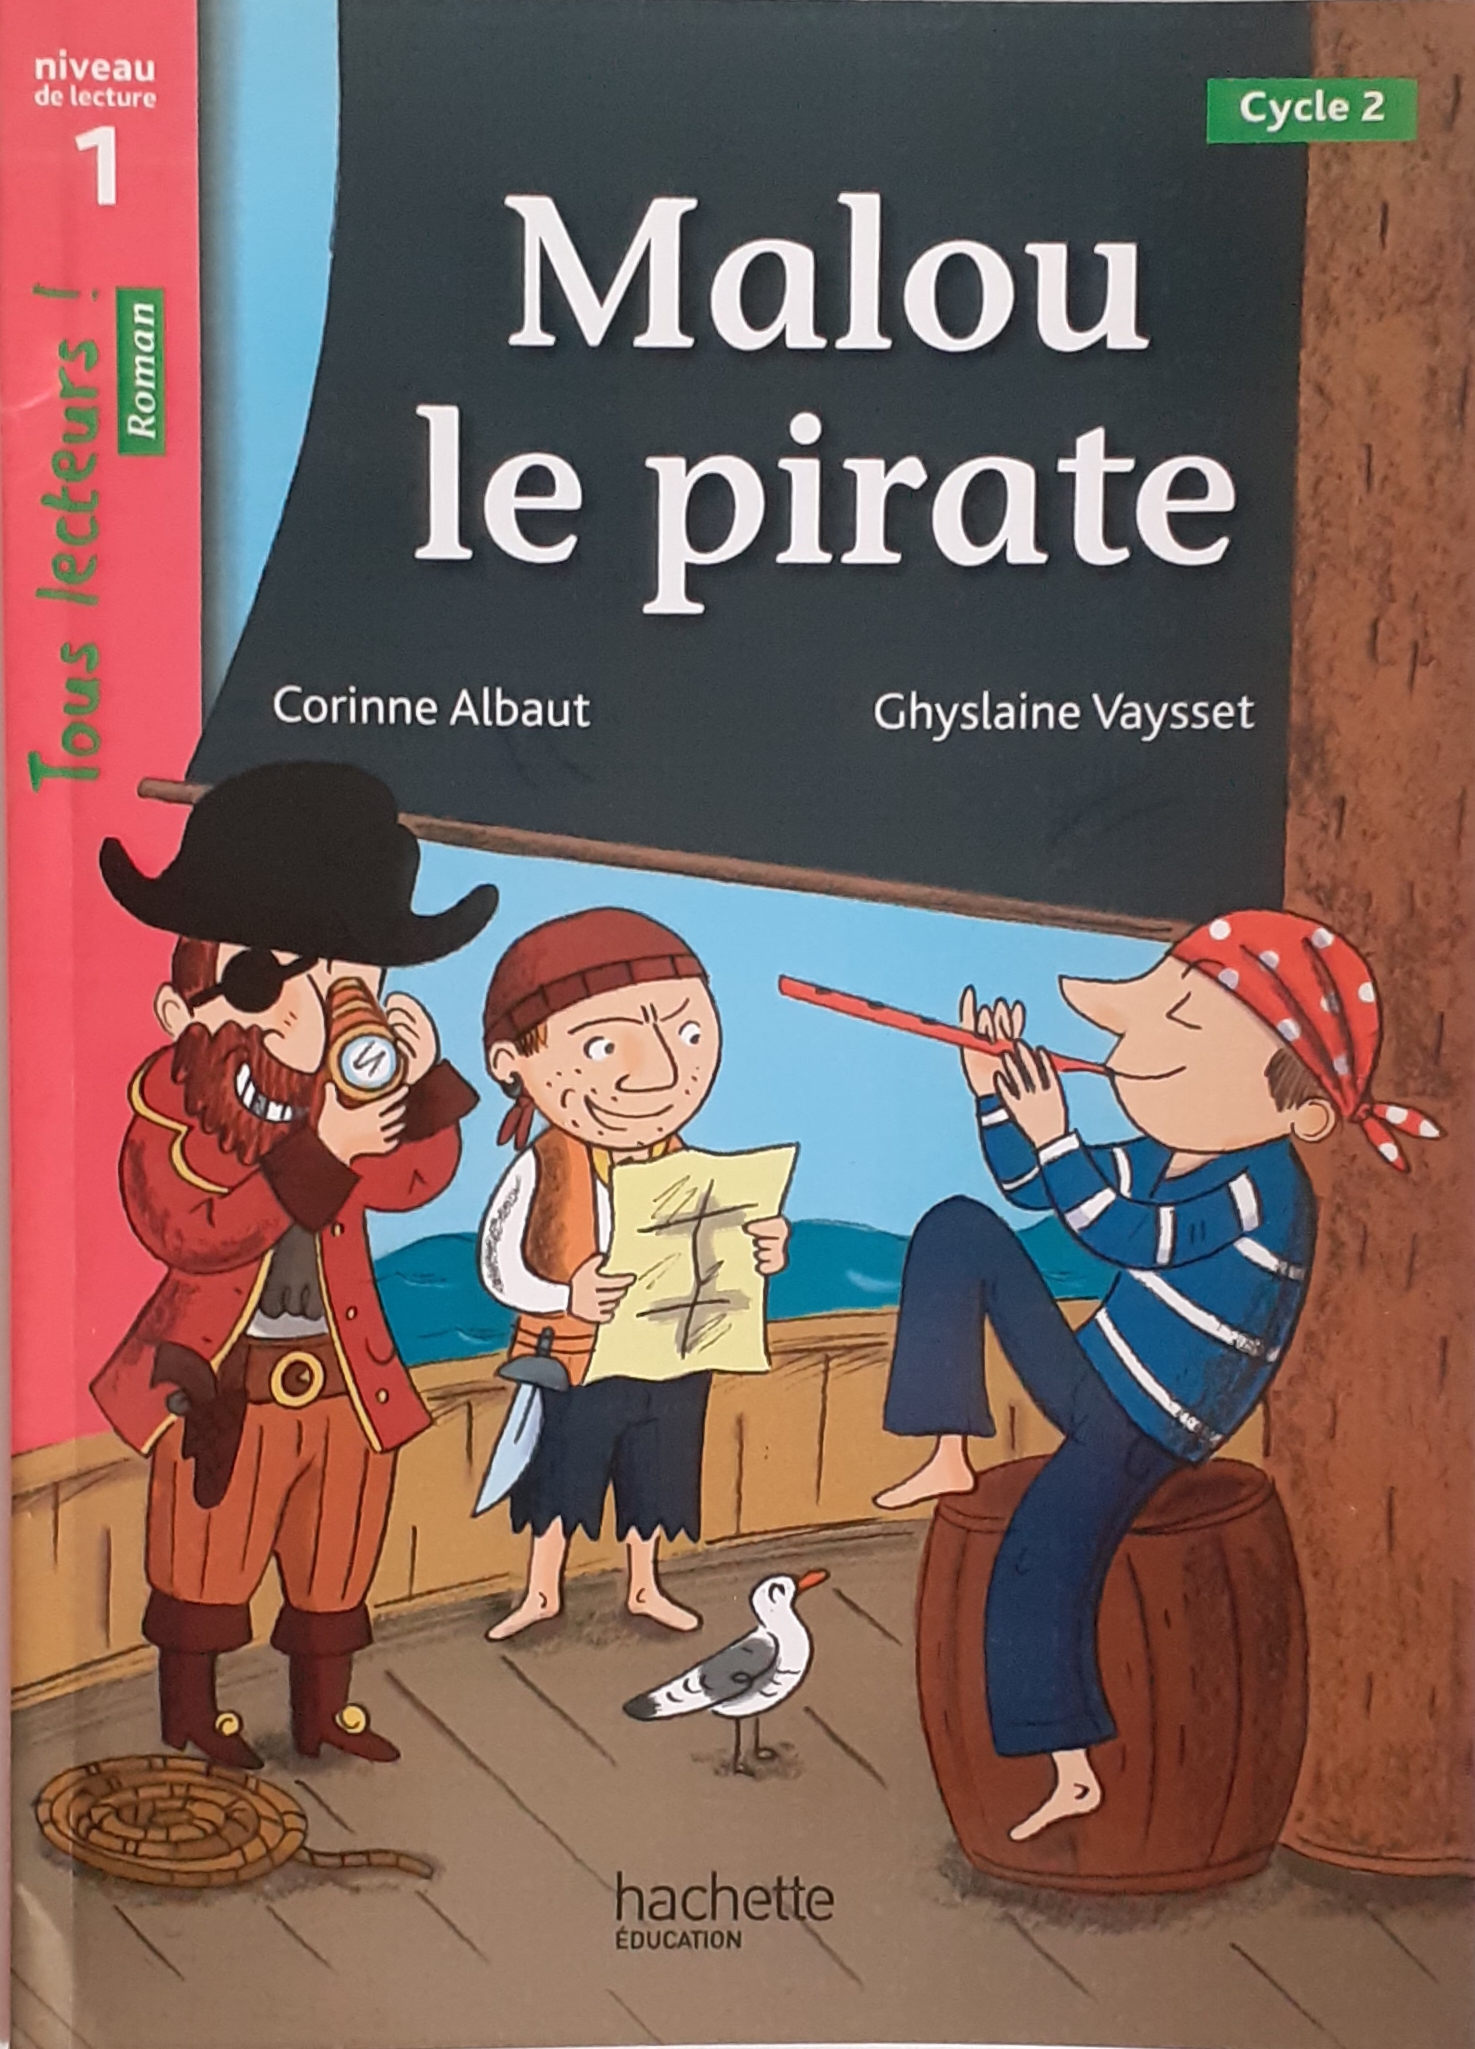 کتاب داستان فرانسه دزد دریایی malou le pirate